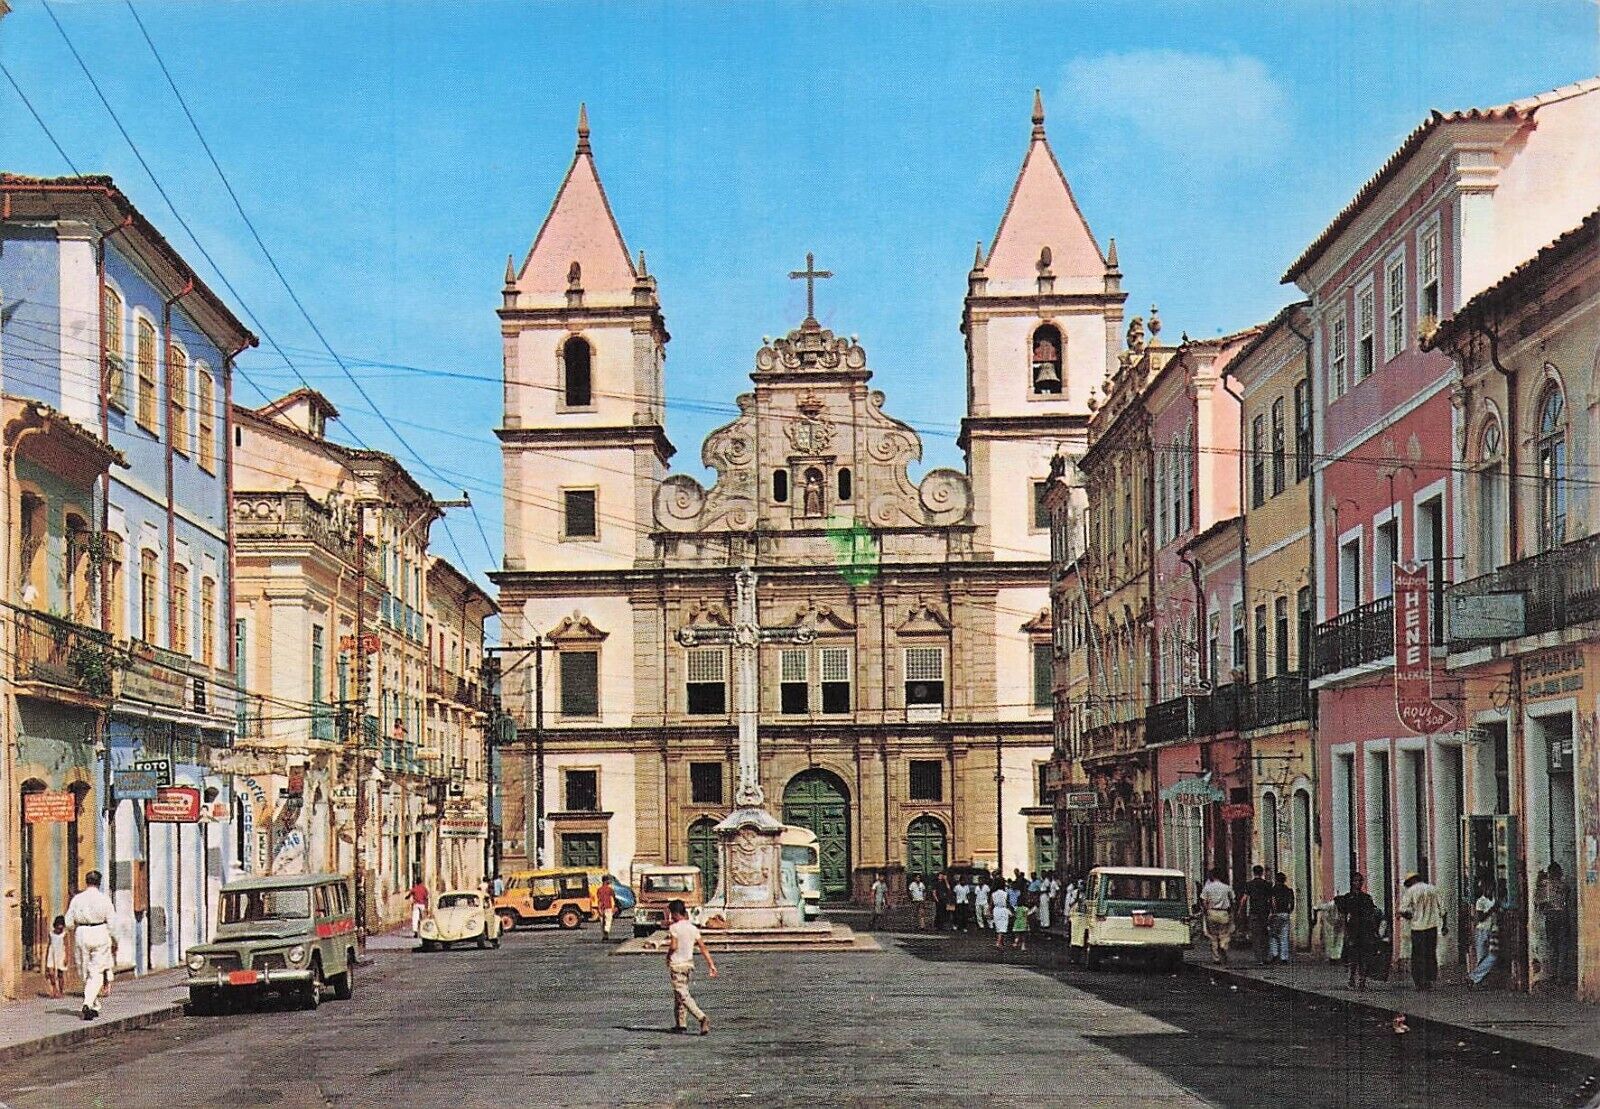 Postcard Vin (1) BRA,Salvador,Brasil Church Sao Francisco Convent 26 P 1981(129)